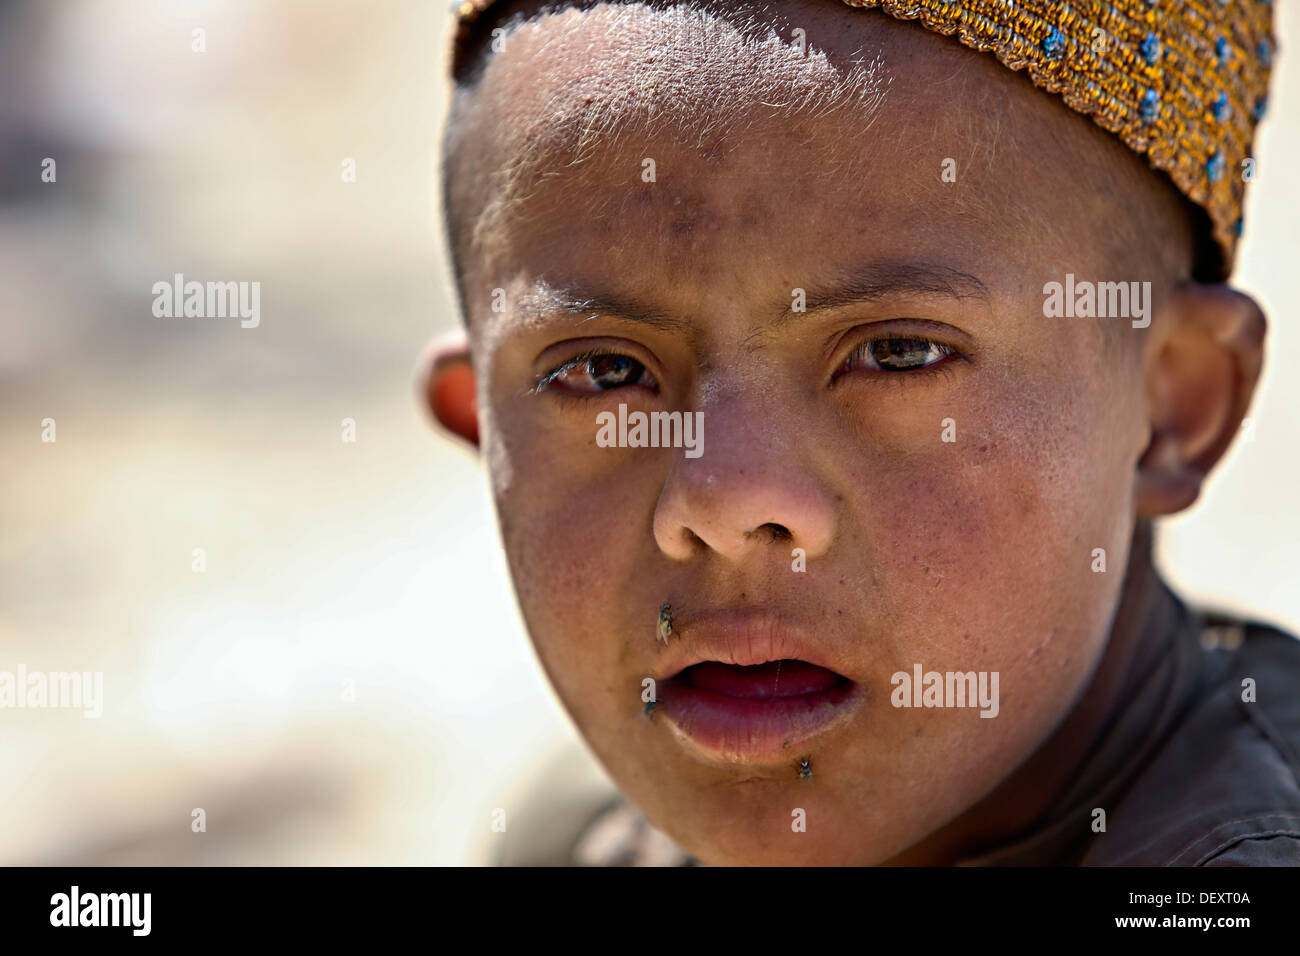 Un garçon Afghan surveille les forces de la Coalition en Barrmo Washir, district, Afghanistan, le 19 septembre 2013. Les forces de la Coalition a mené des patrouilles montés et démontés et engagé les ressortissants locaux afin d'empêcher l'insurrection. Banque D'Images